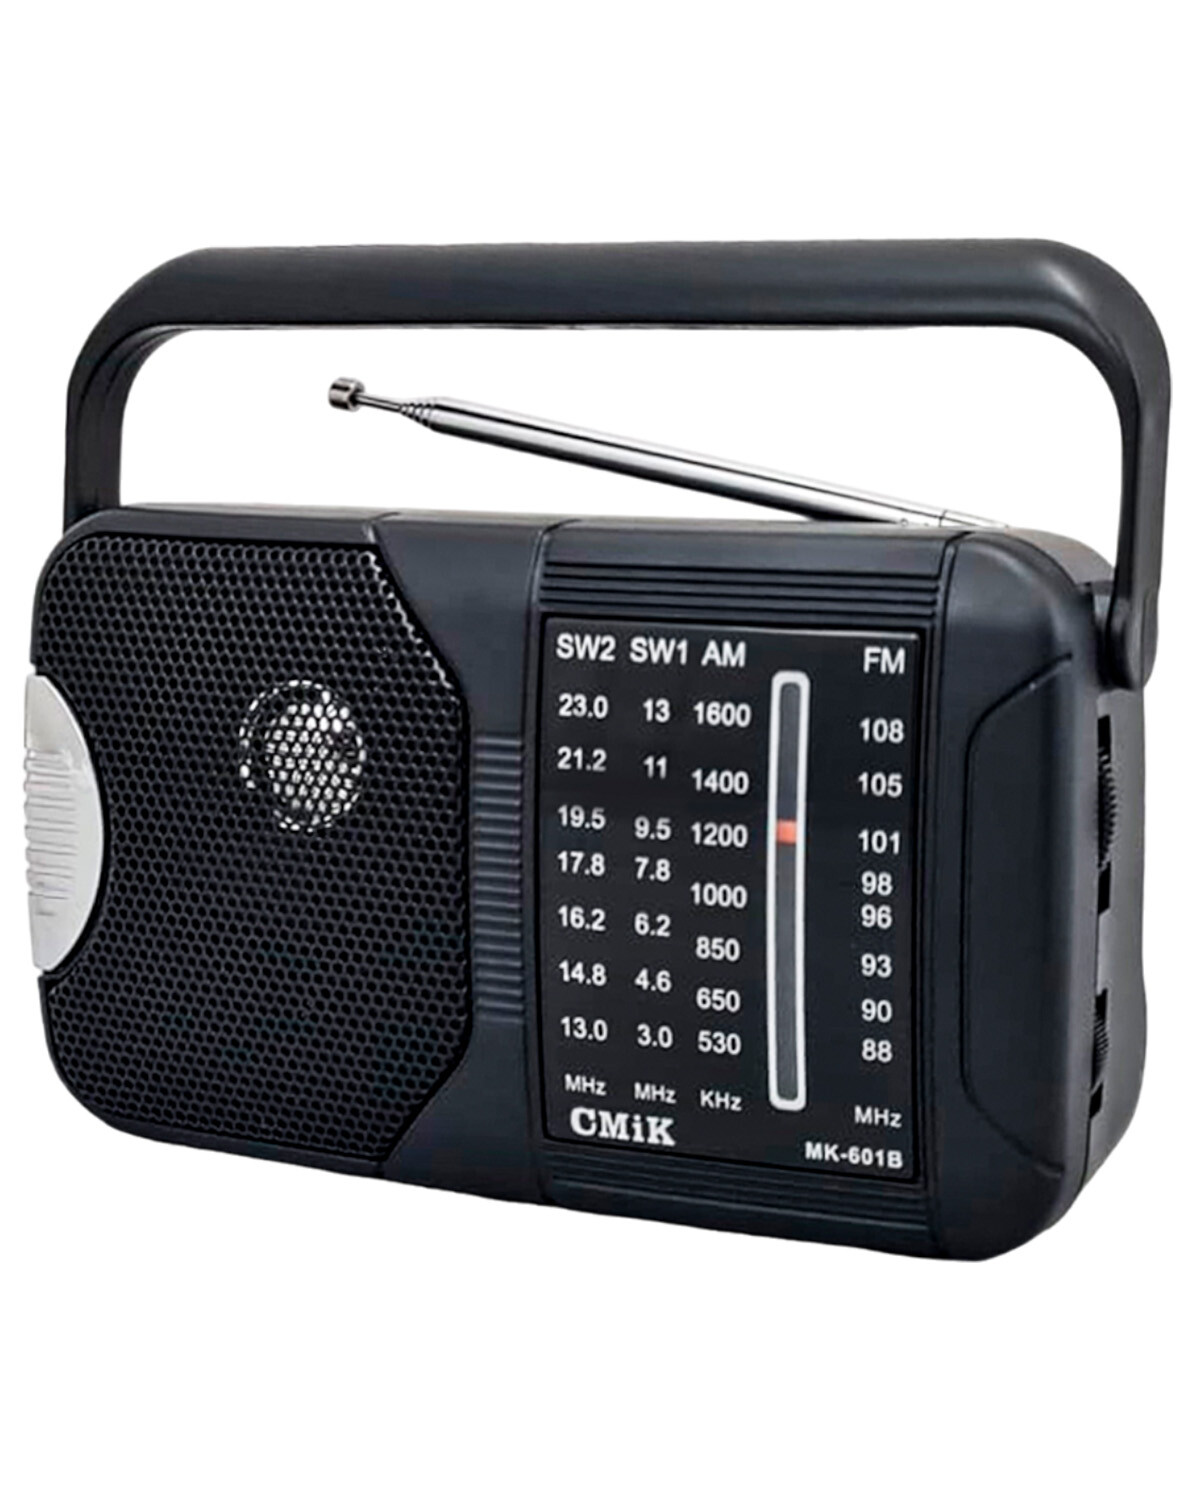 Radio multibanda a pilas con asa AM FM SW1 SW2 — Electroventas